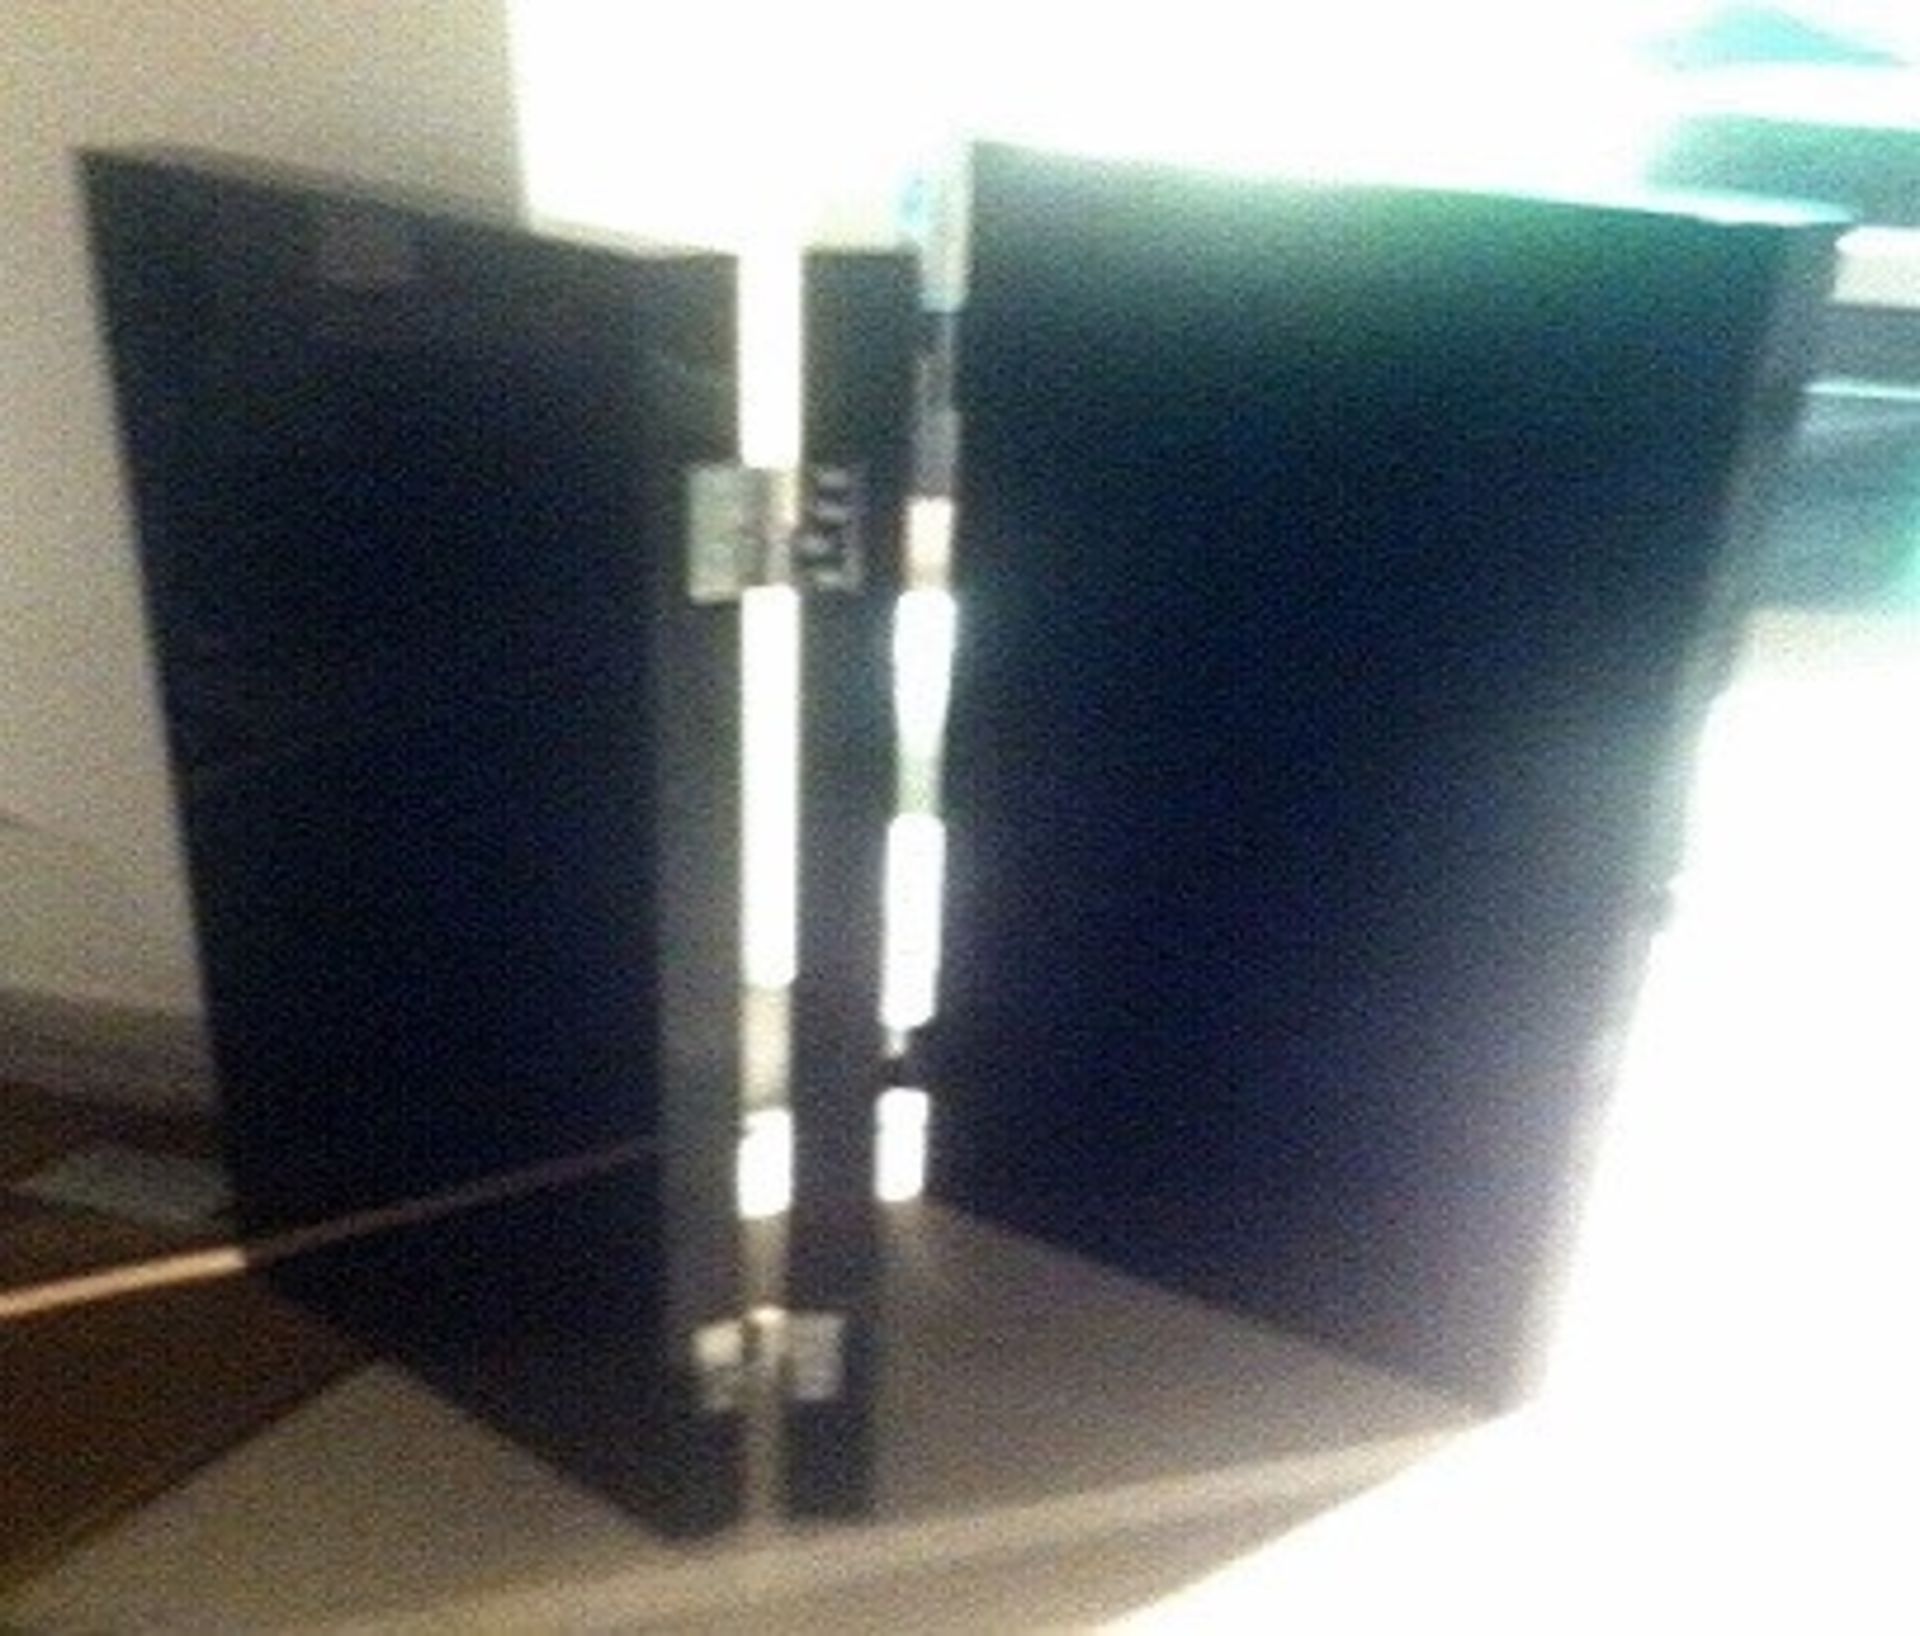 1 x MAXALTO "Arke" Screen (Ss12) - Brushed Black Oak - Ref: 2847718 - width 150cm | height 120cm - - Image 3 of 4